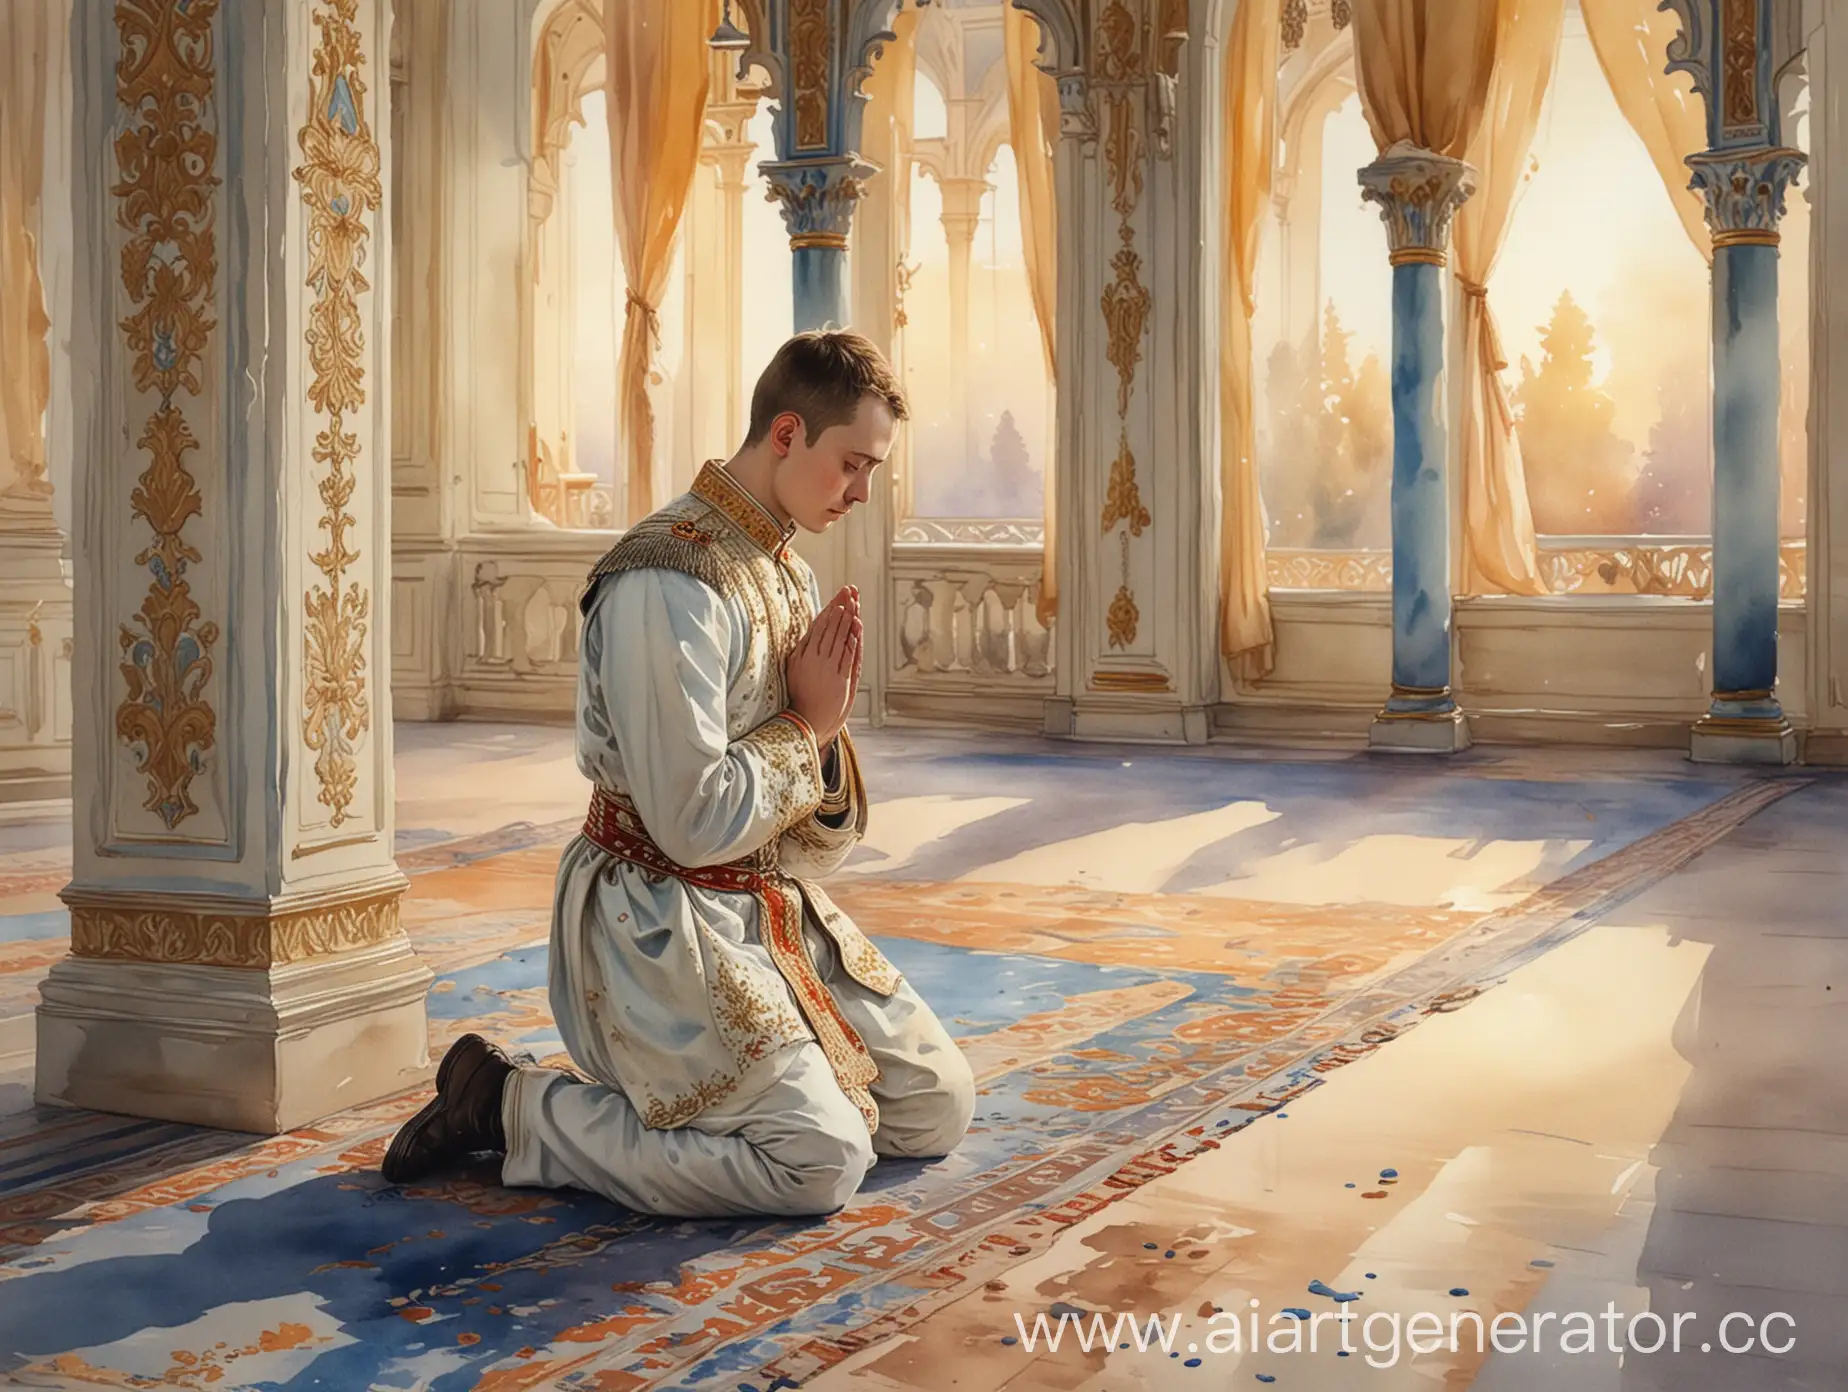 молодой царь молится на коленях в красивом дворце, вечер, акварельный рисунок